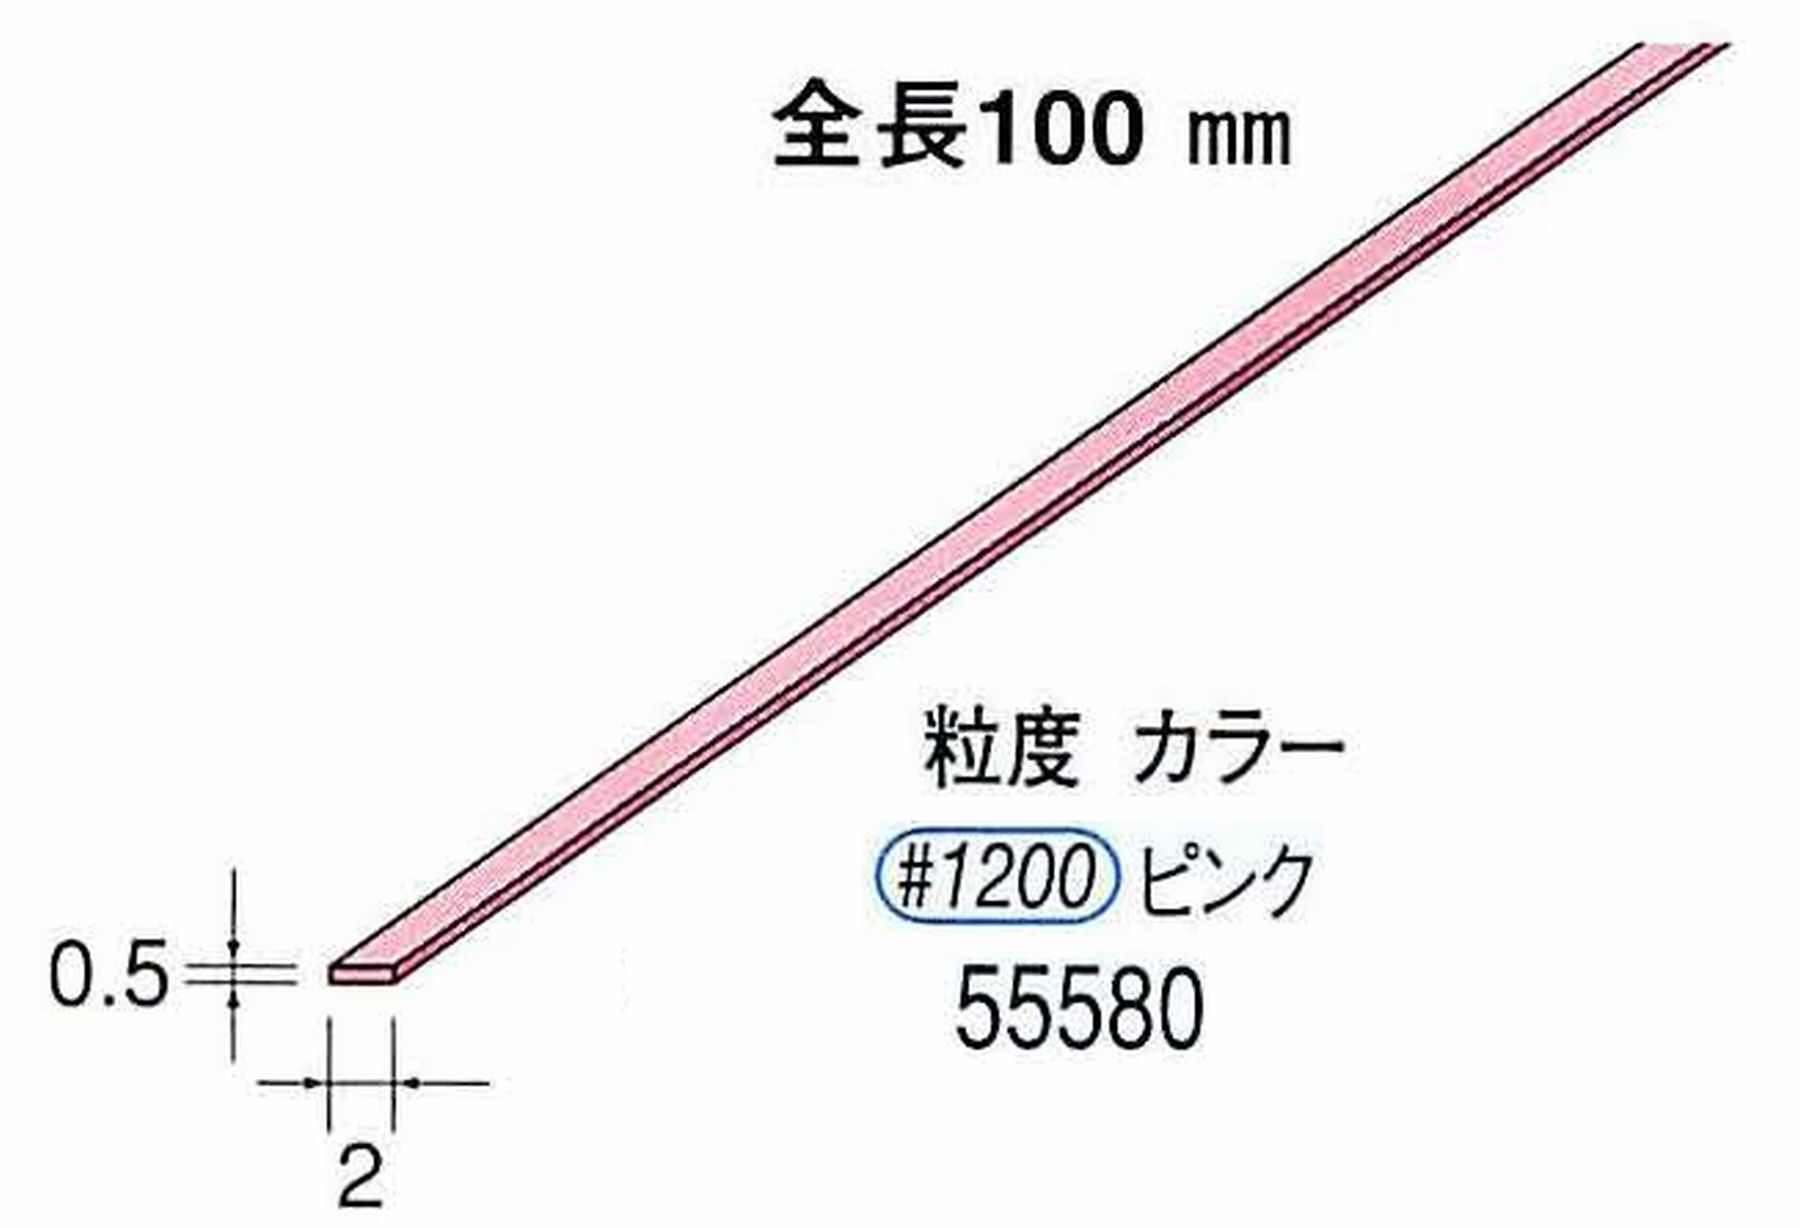 ナカニシ/NAKANISHI セラファイバー砥石 全長100mm ピンク 55580